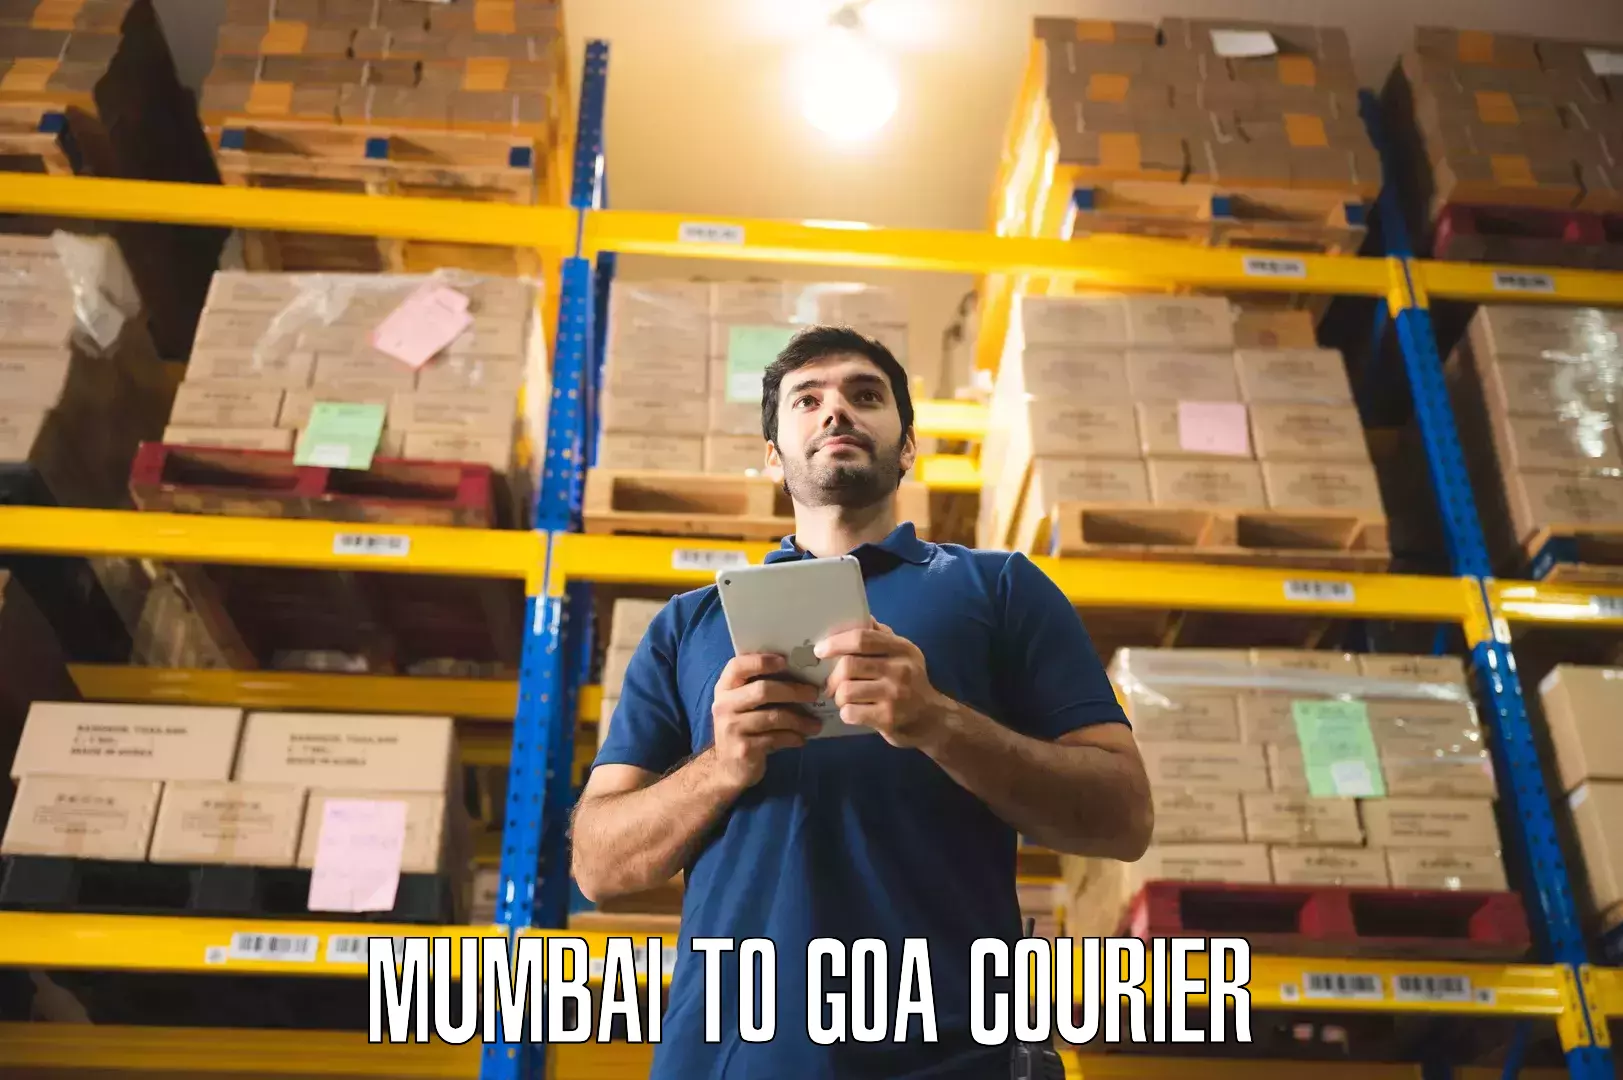 Expert furniture movers Mumbai to South Goa